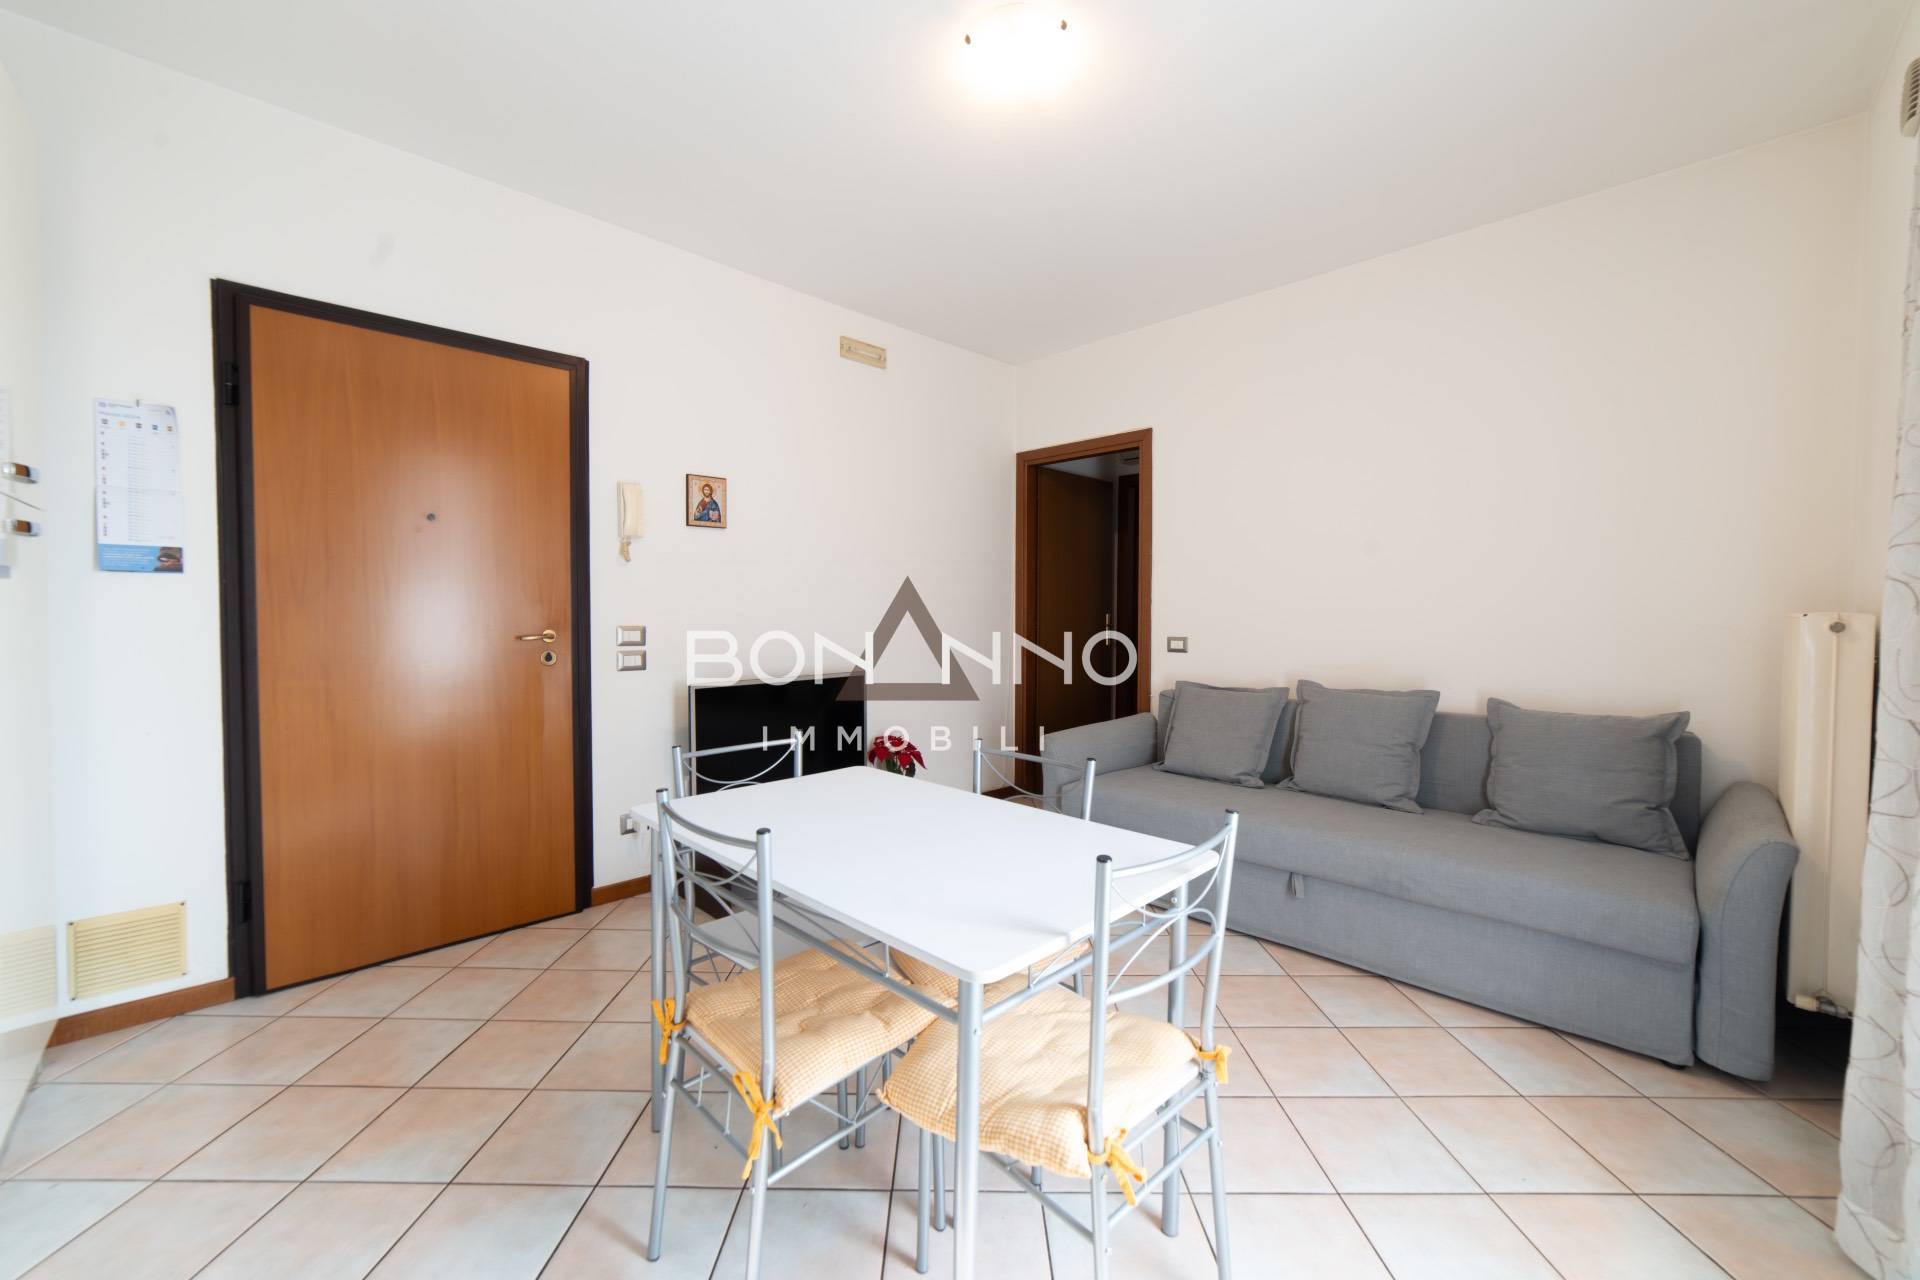 Appartamento in vendita a Vedelago, 2 locali, zona on, prezzo € 93.500 | PortaleAgenzieImmobiliari.it